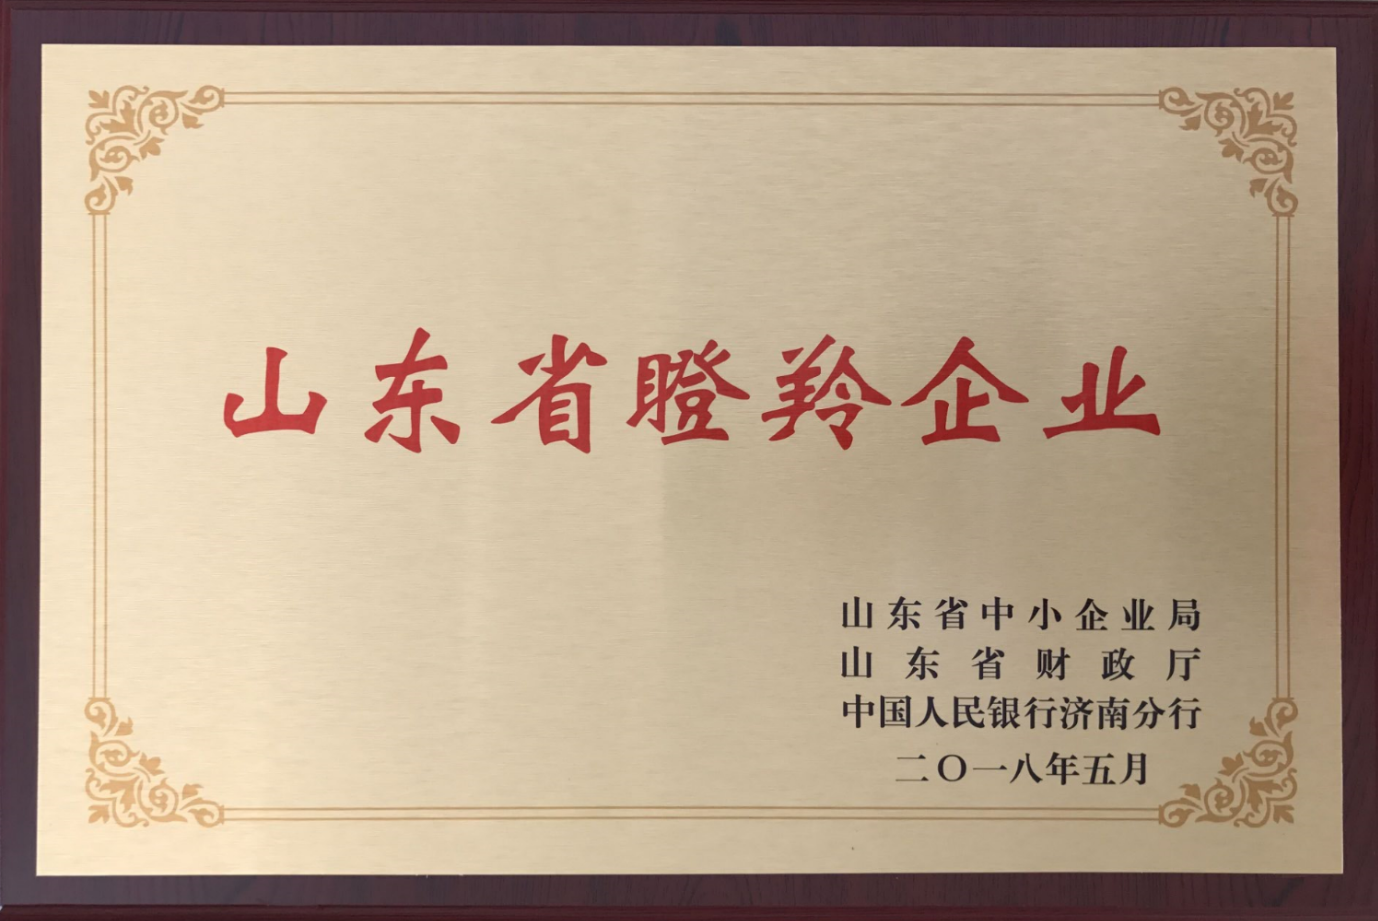 2018年公司入选山东省首批100家瞪羚示范企业